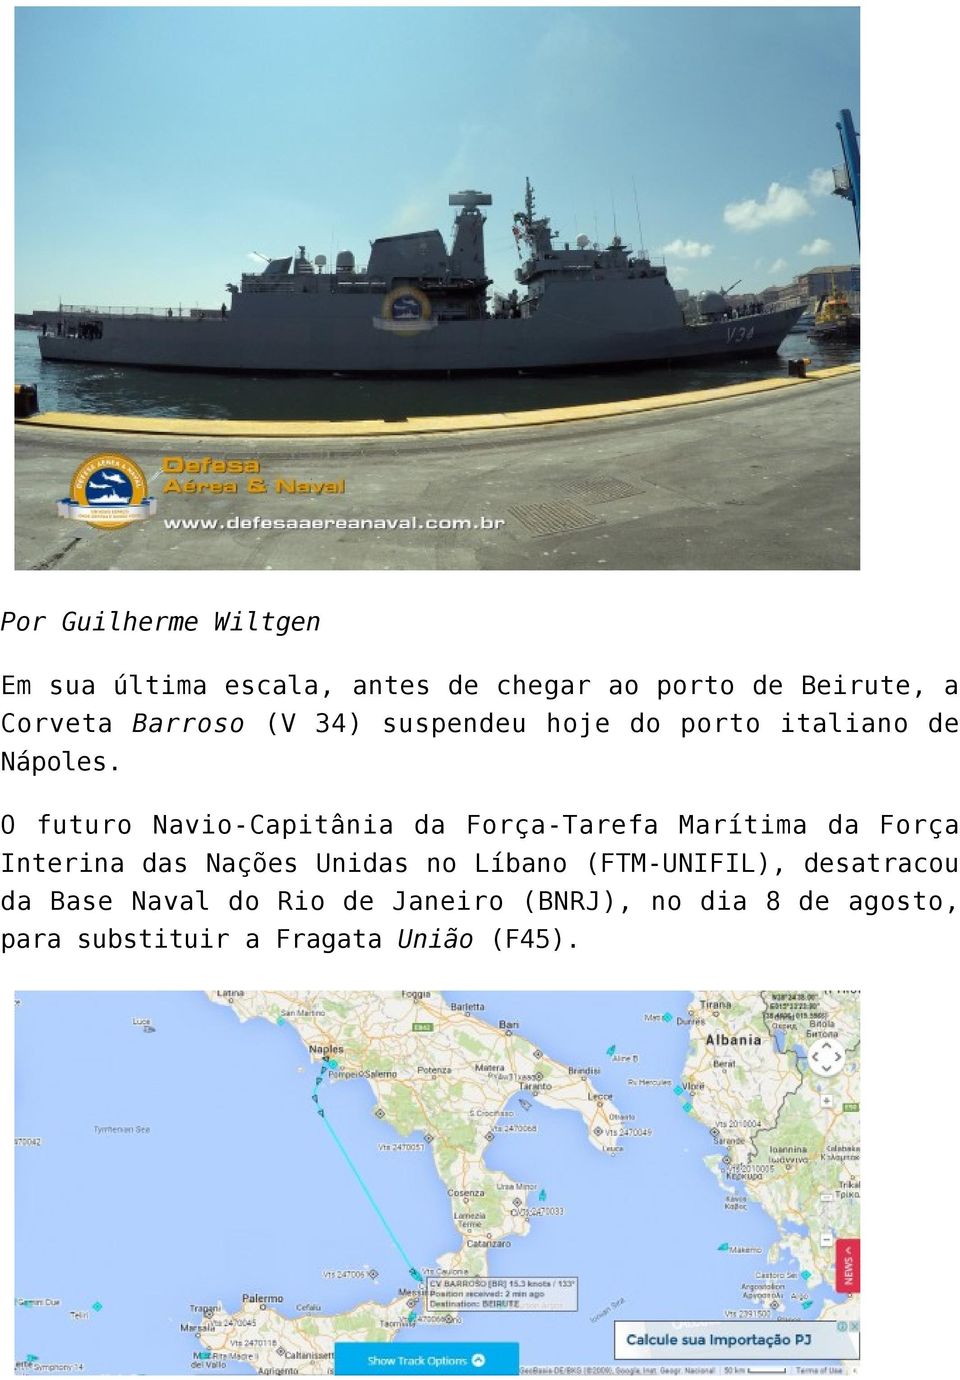 O futuro Navio-Capitânia da Força-Tarefa Marítima da Força Interina das Nações Unidas no